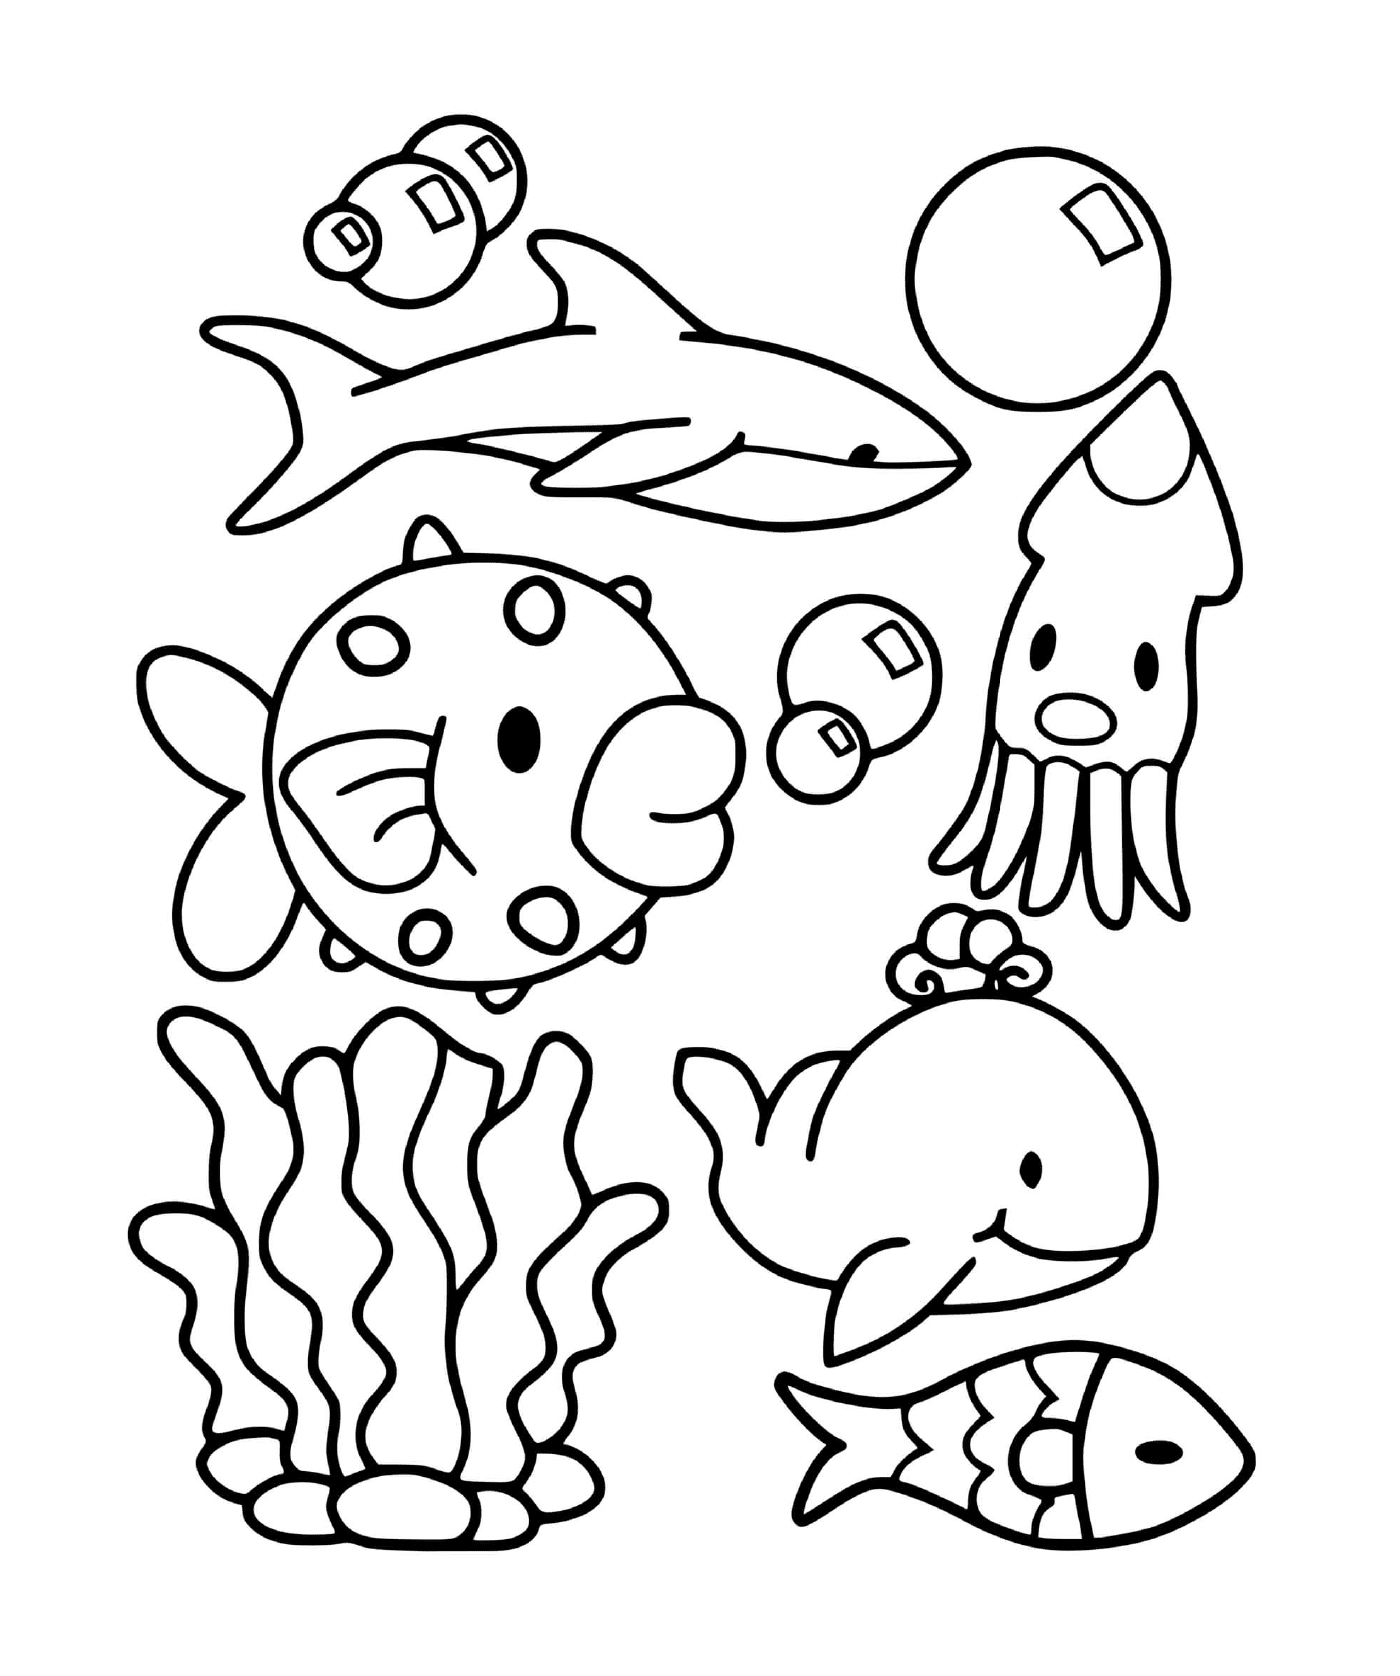  مجموعة من الحيوانات البحرية 